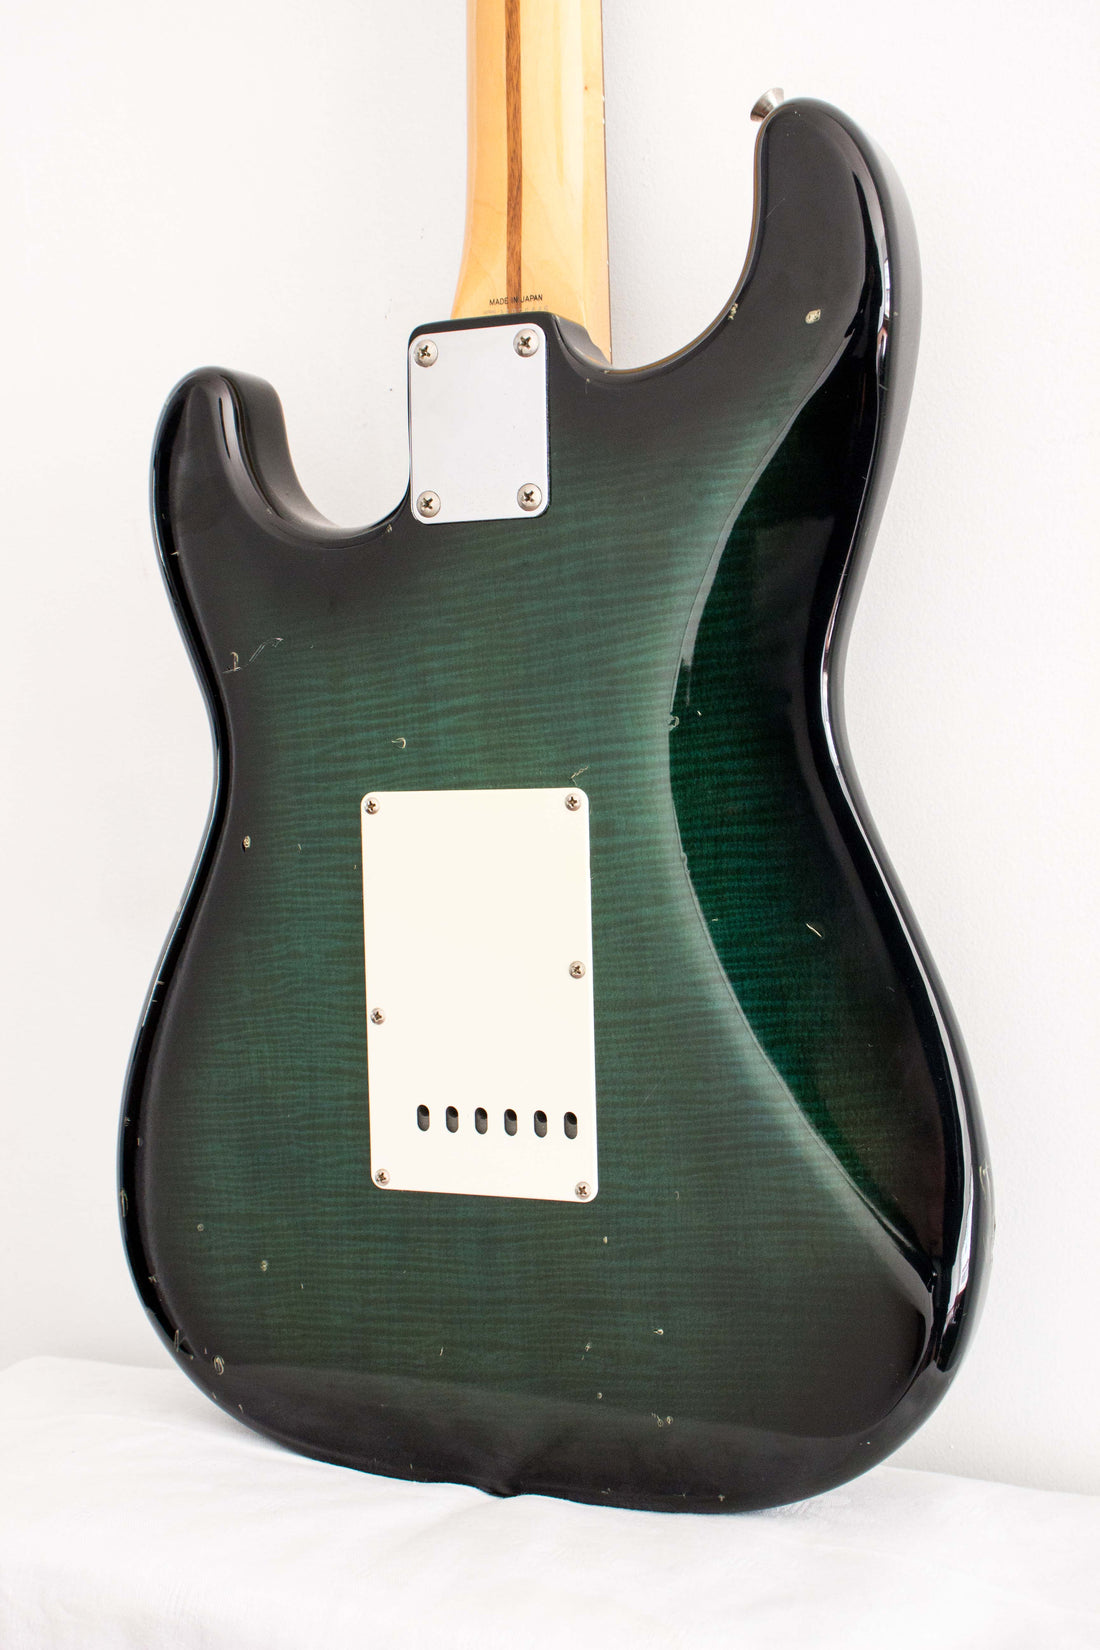 Fender Japan '62 Stratocaster ST62-53 Green Flame Burst 1994